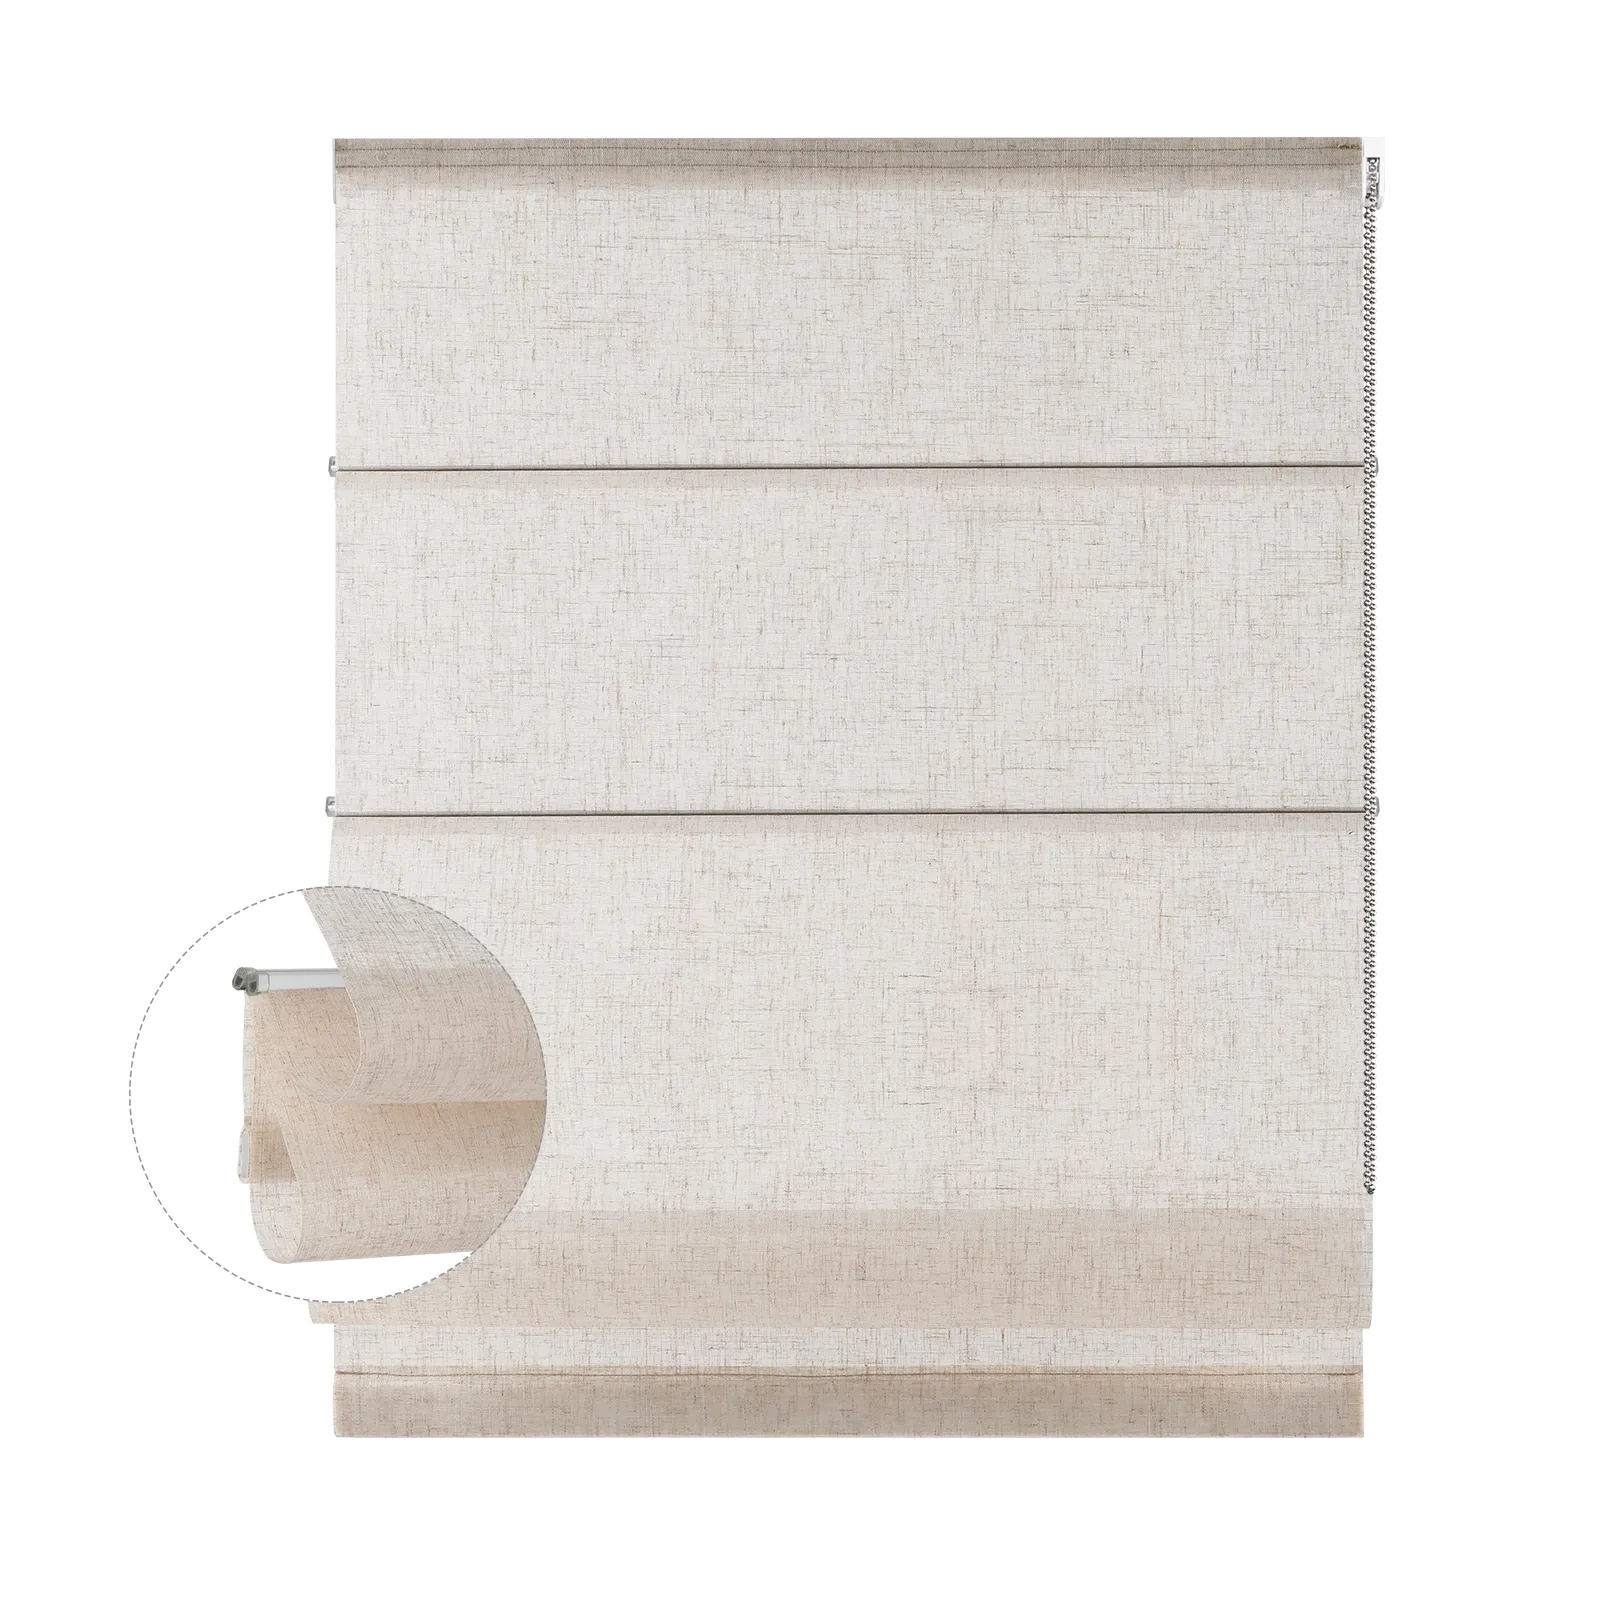 Customizzato stile moderno tende da tende romane manuali luce filtrante tessuto tende rullo per le finestre del soggiorno